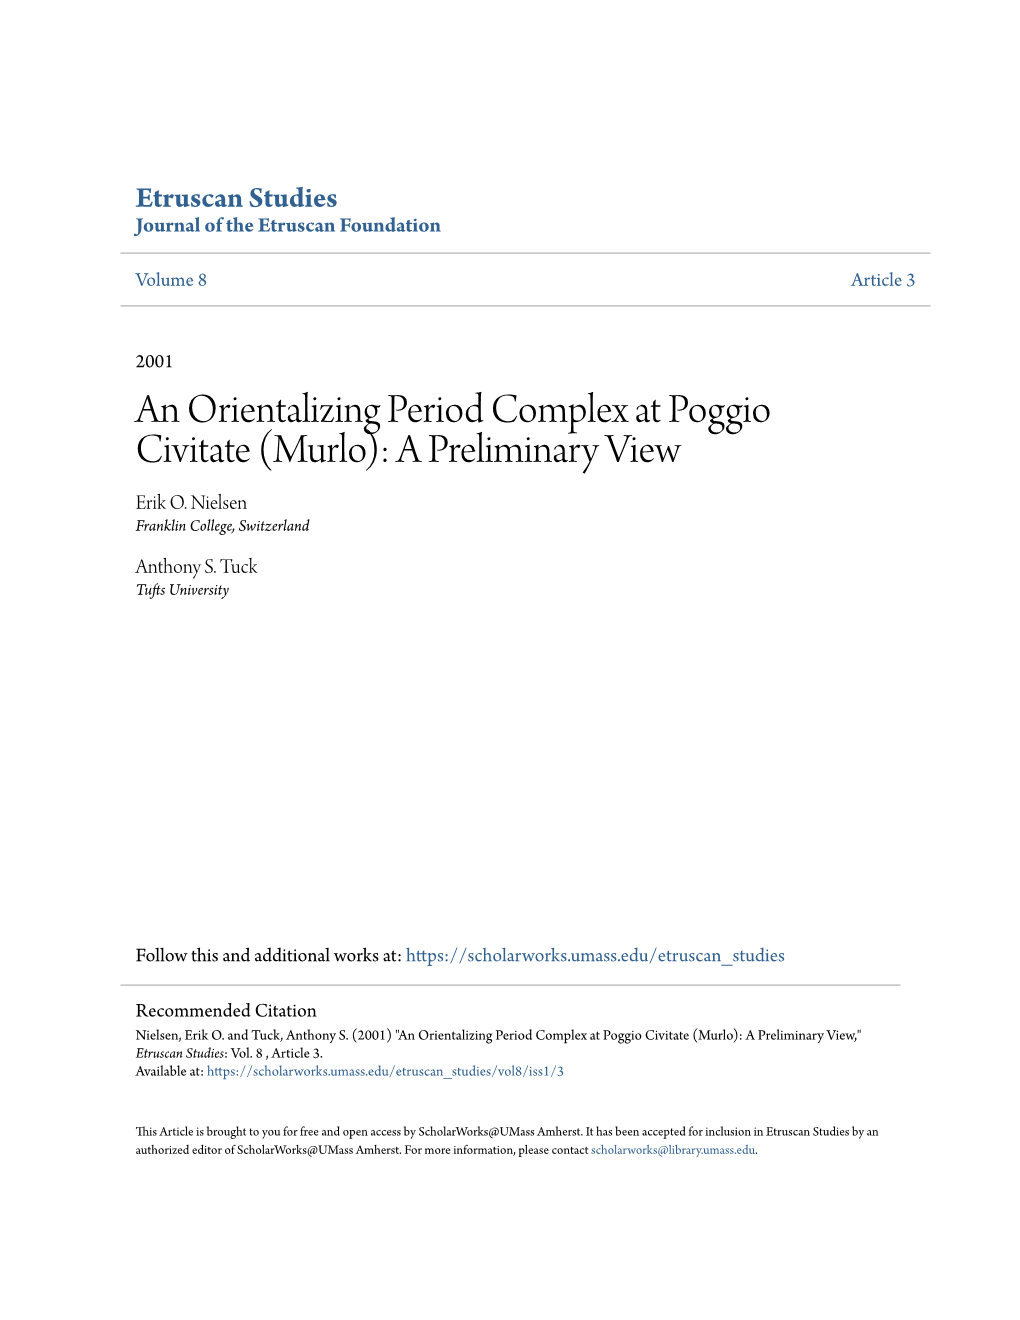 An Orientalizing Period Complex at Poggio Civitate (Murlo): a Preliminary View Erik O